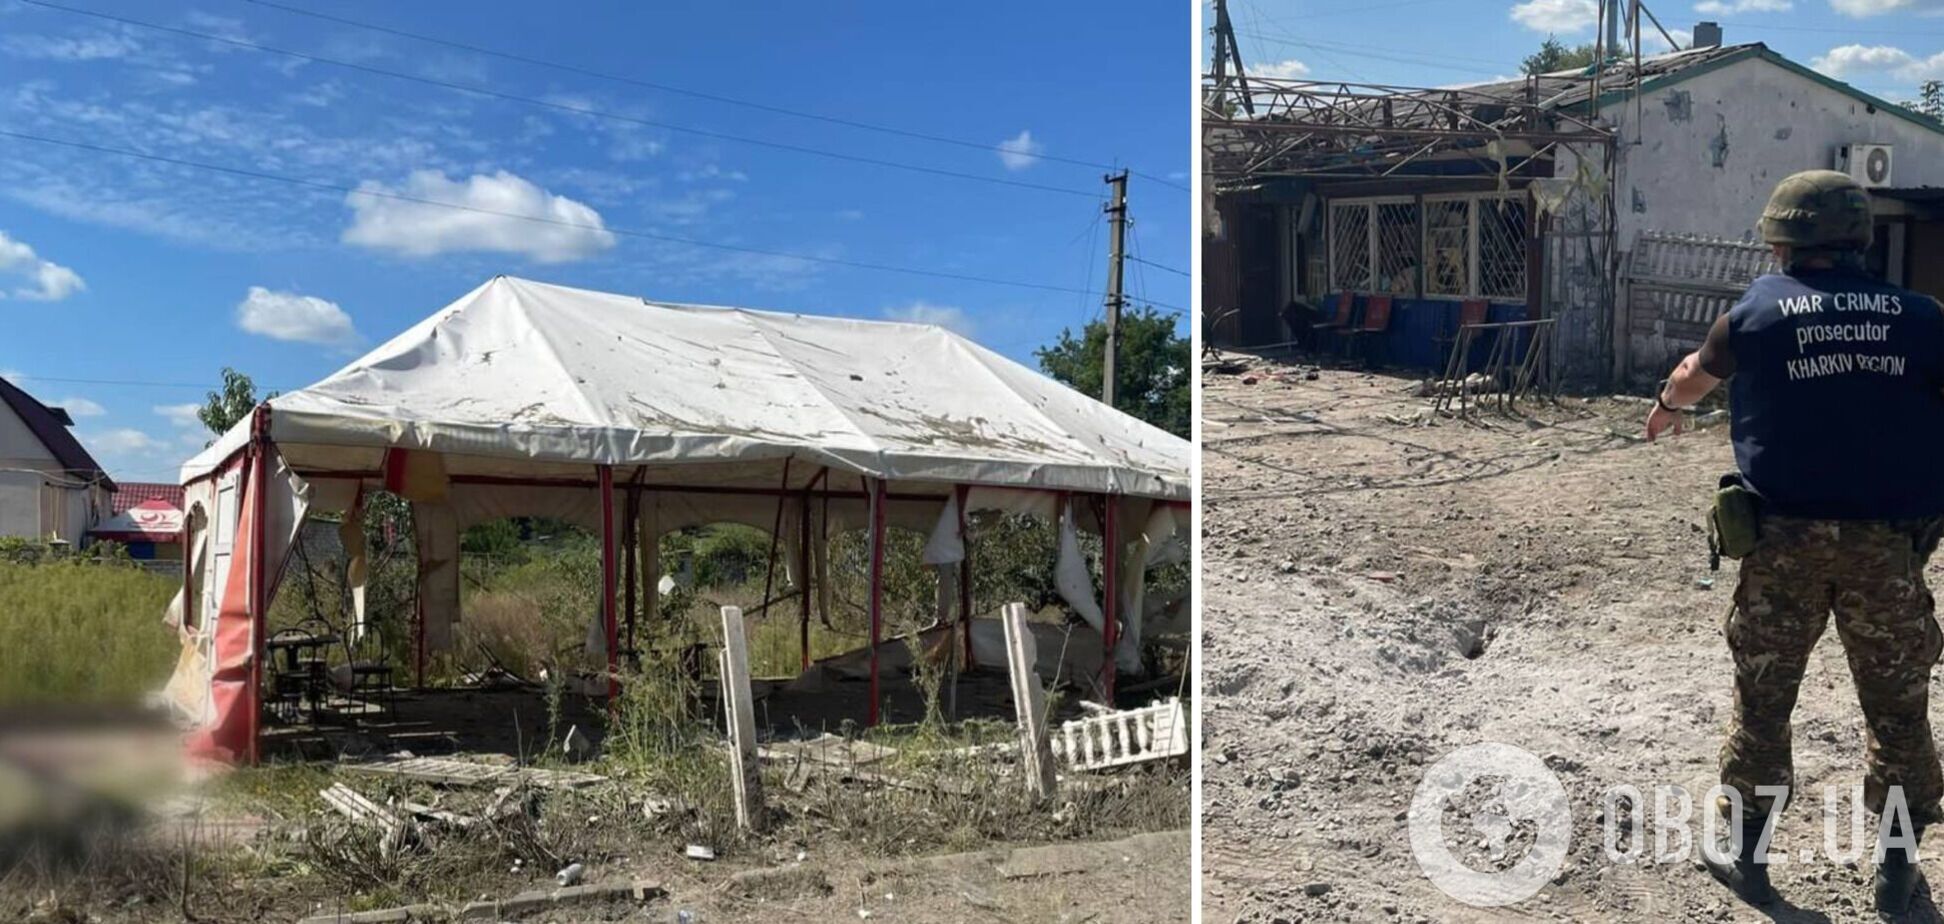 Войска РФ ударили по кафе в Купянском районе: есть погибшие